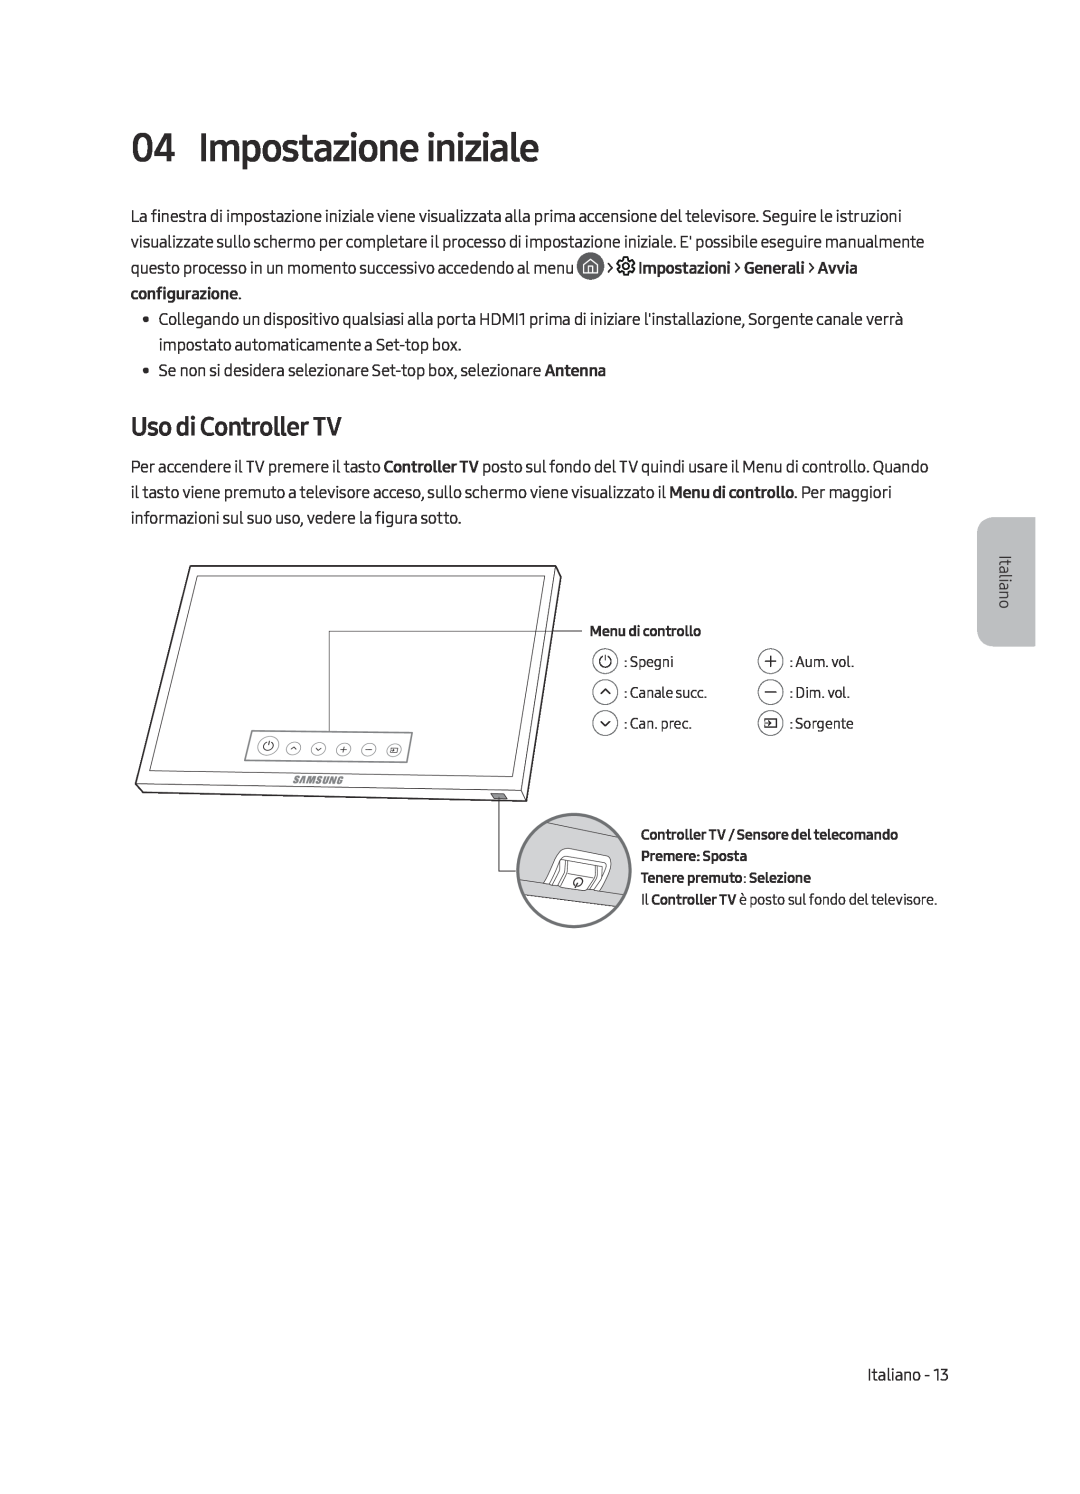 Samsung UE49MU6449UXZG, UE40MU6479UXZG, UE65MU6449UXZG, UE40MU6449UXZG manual Impostazione iniziale, Uso di Controller TV 